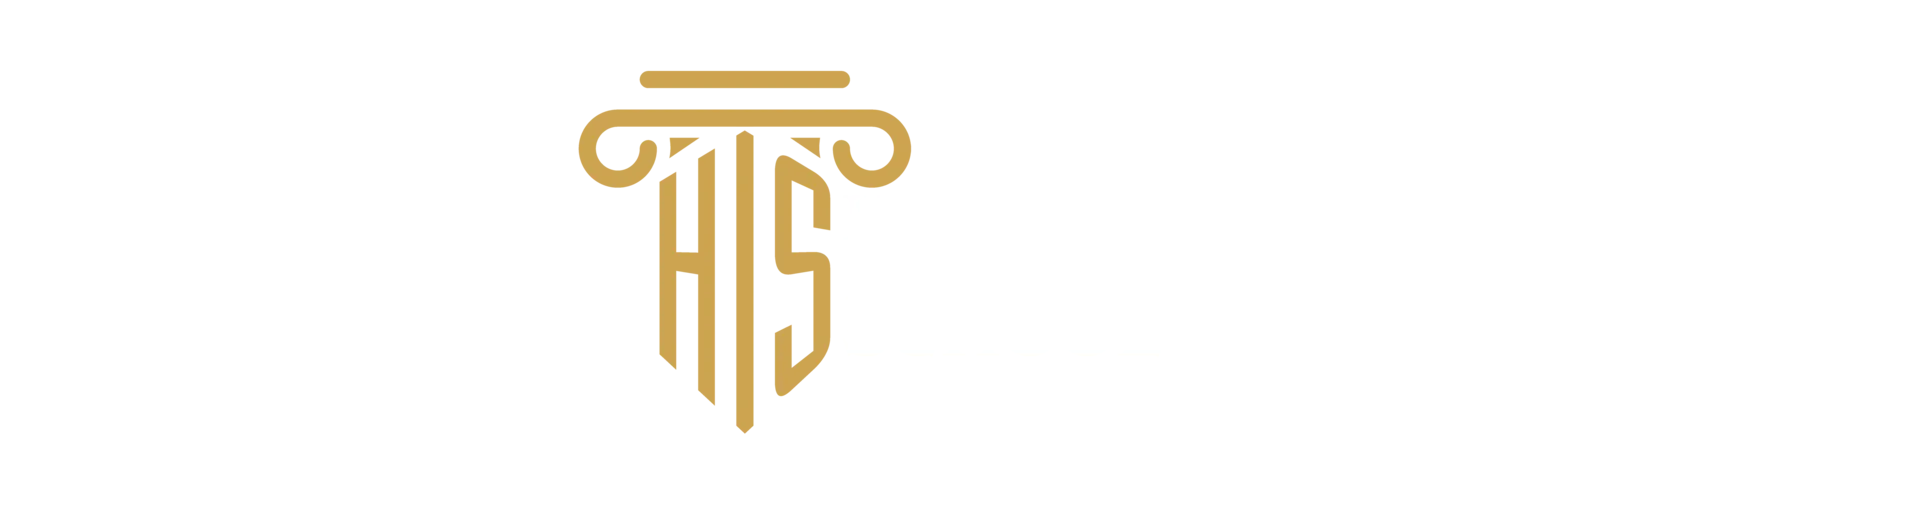 Harmony Independent School